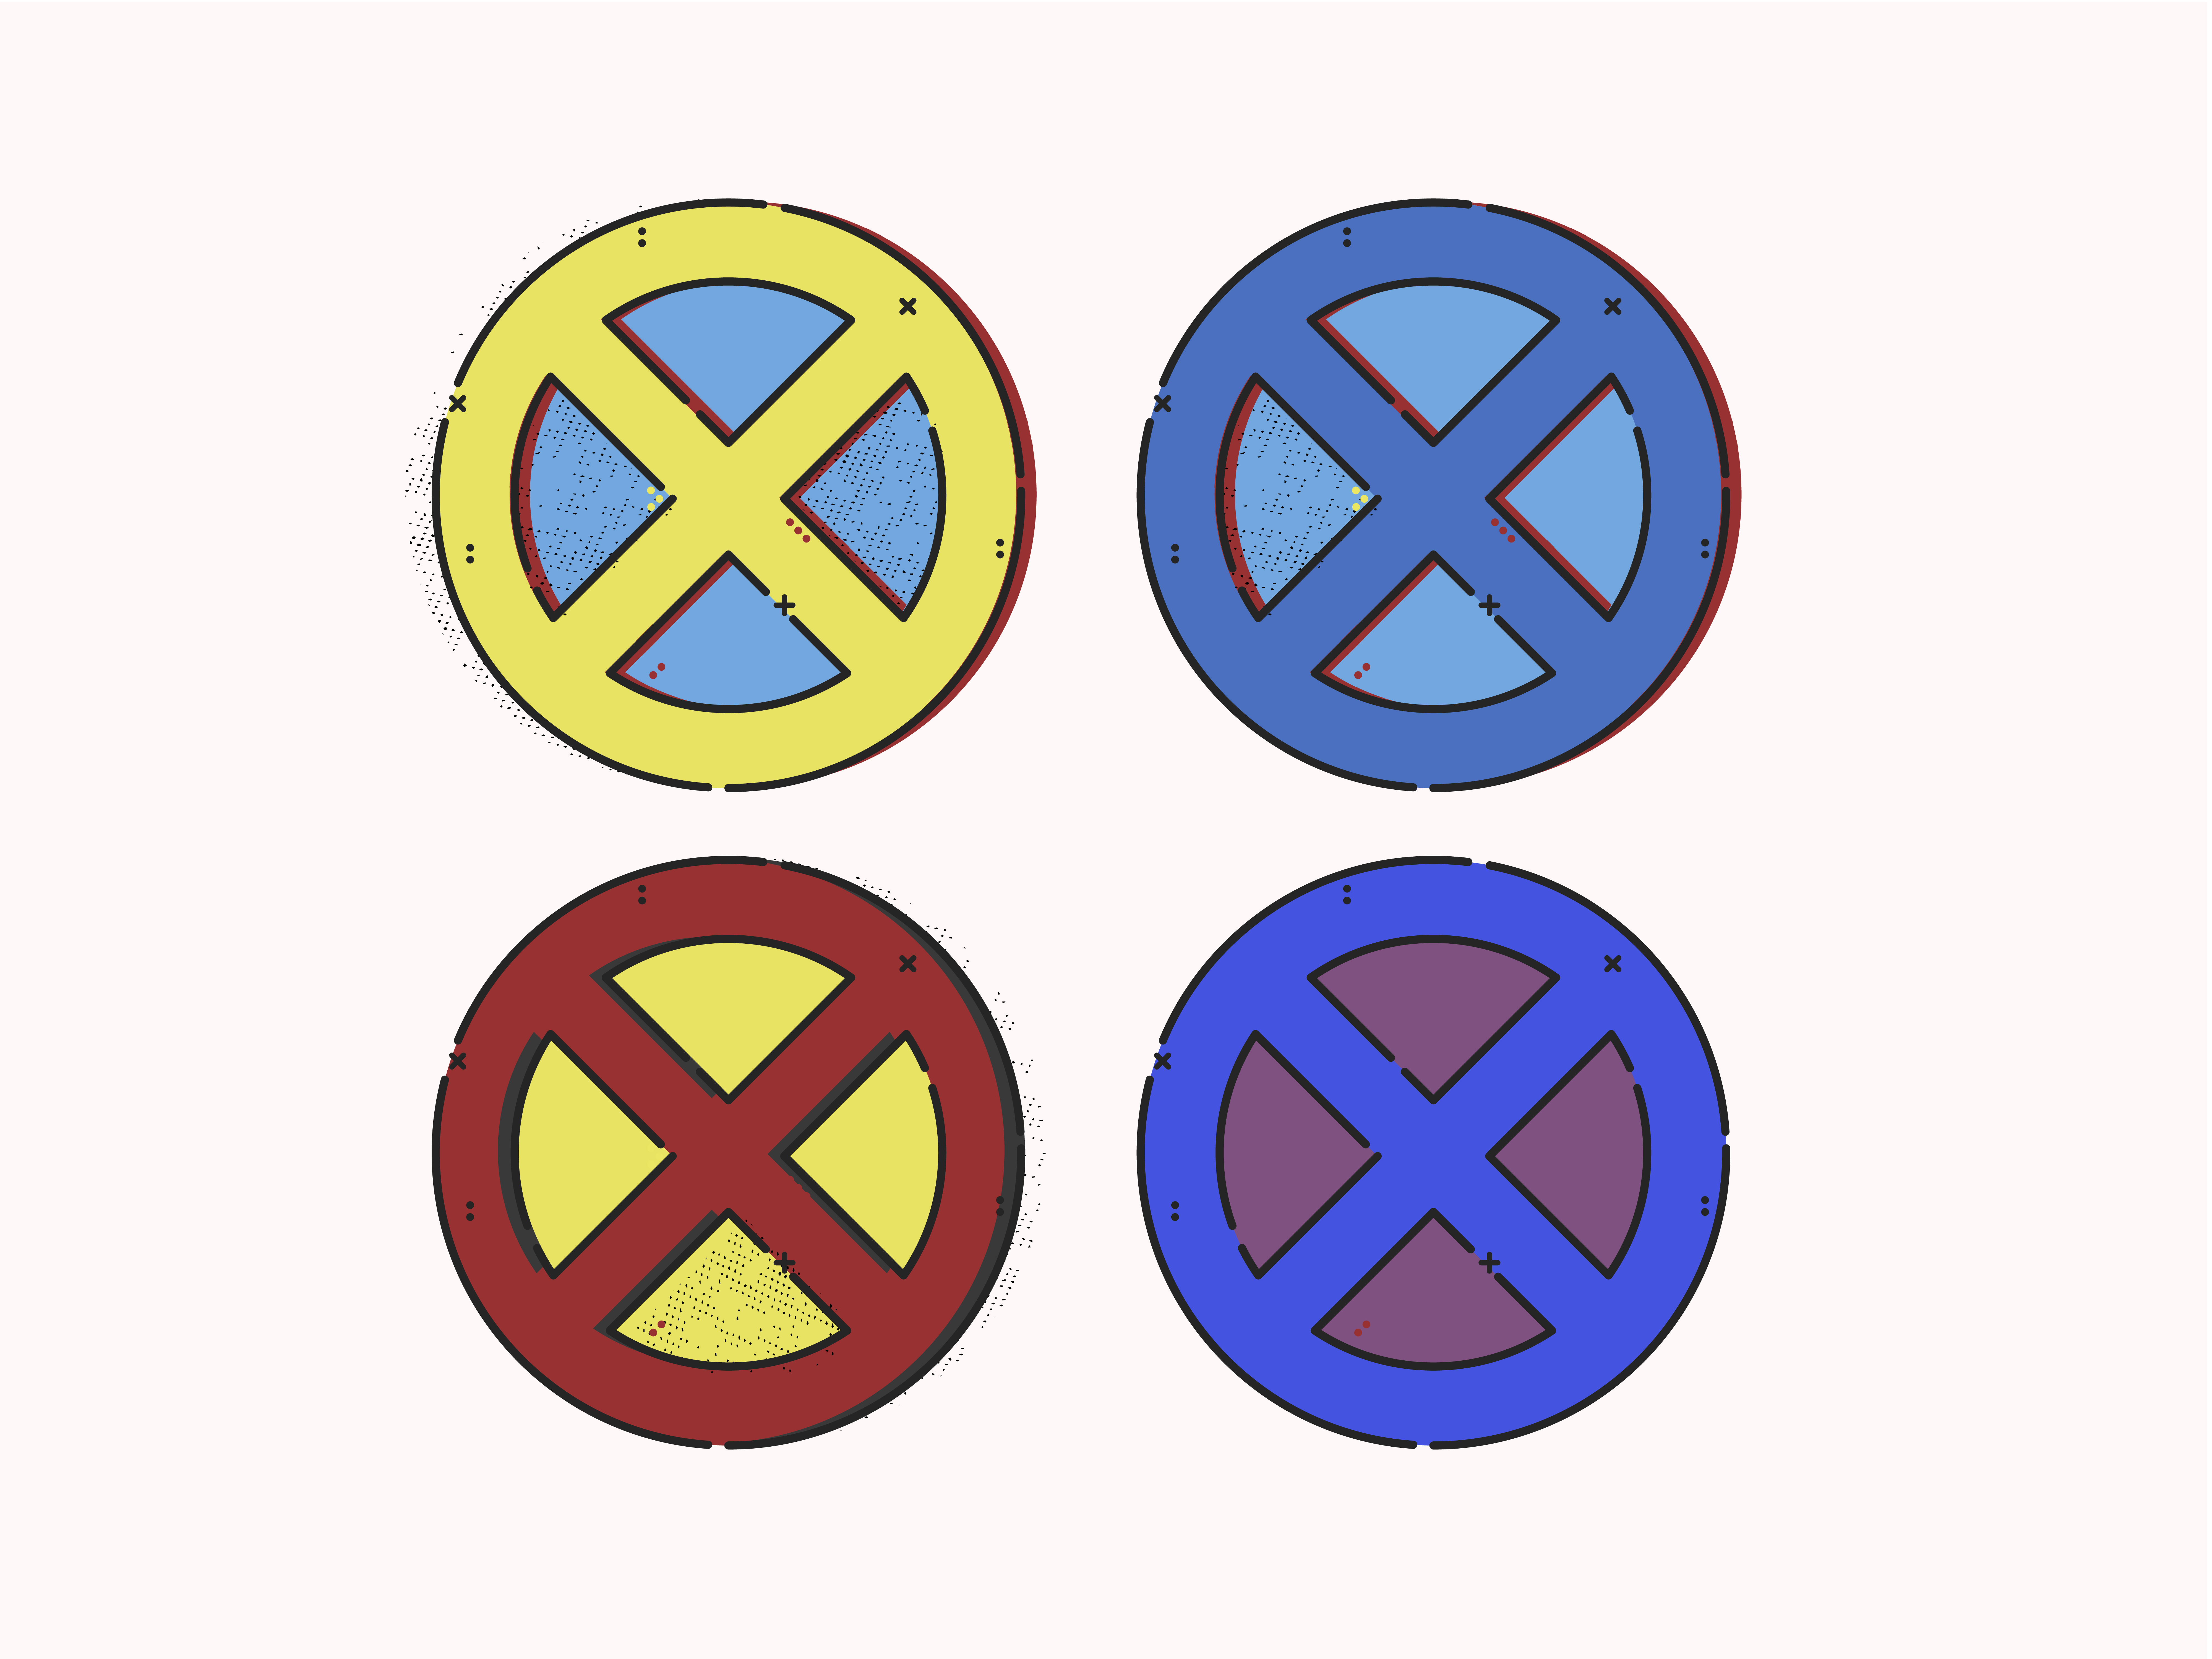 original x men symbol